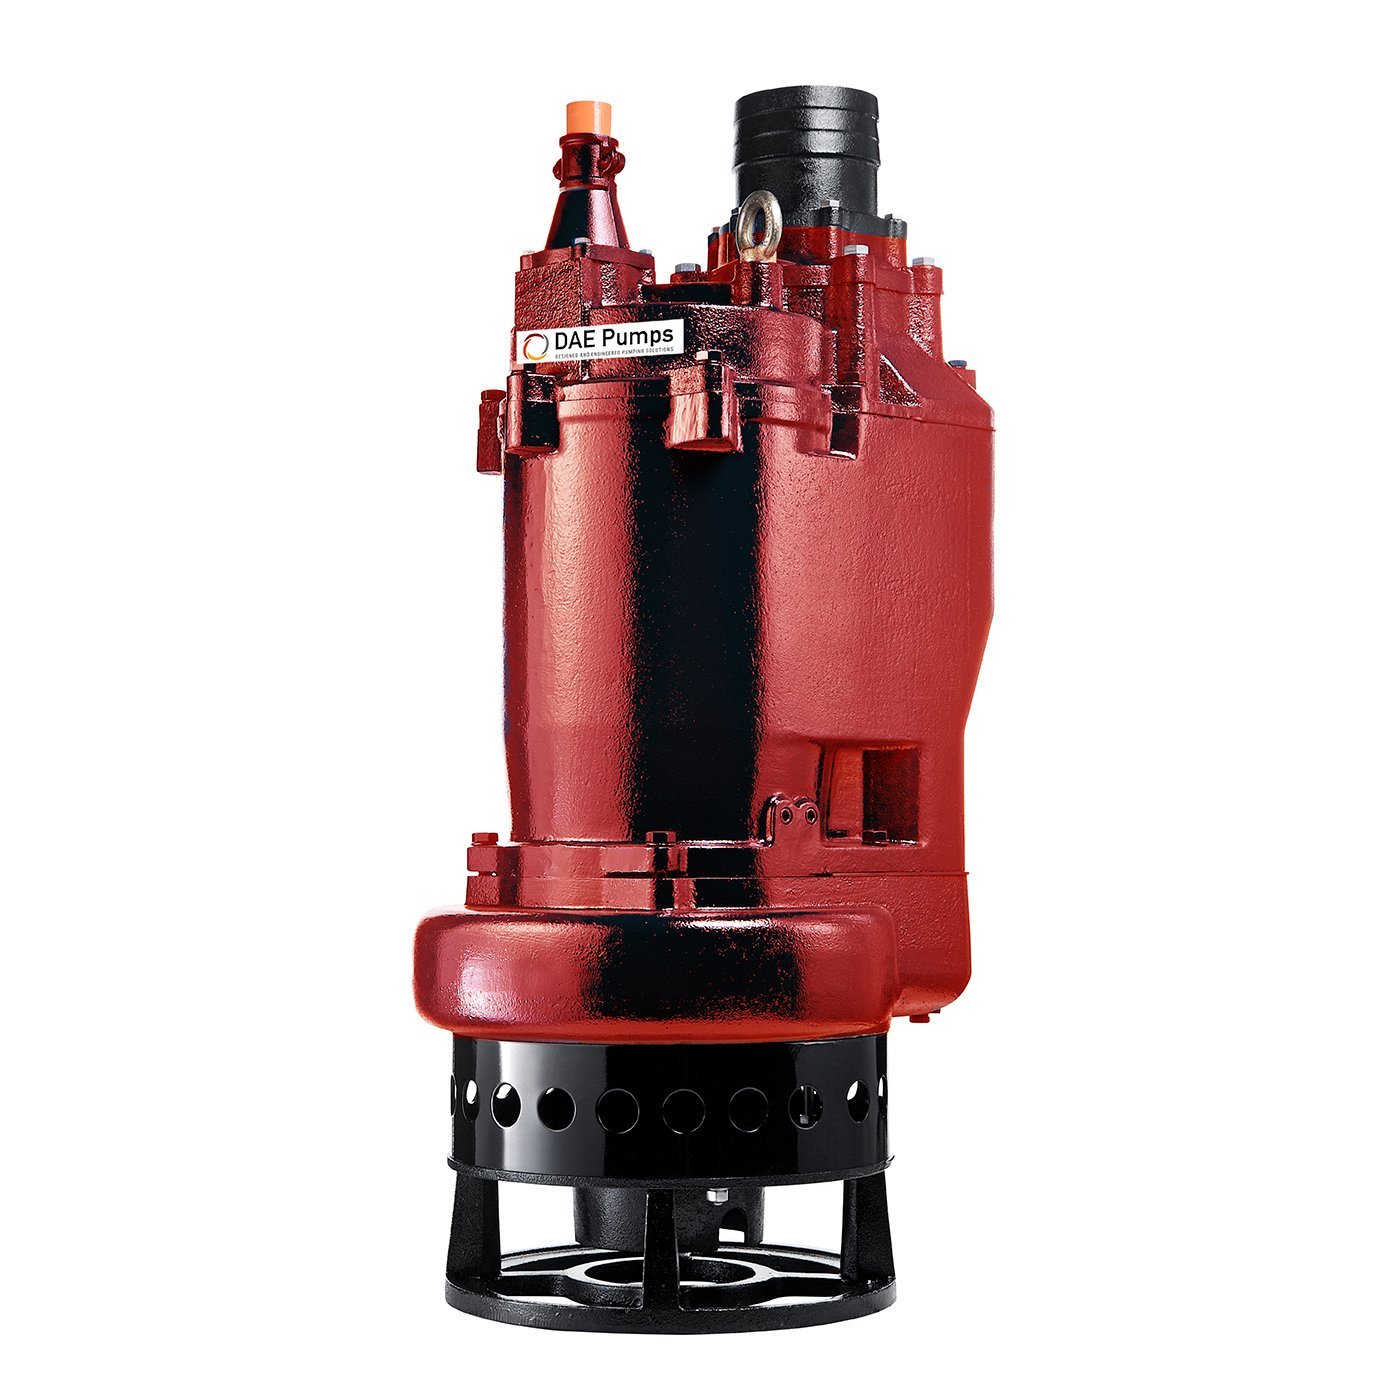 DAE Pumps 8220-P Submersible Slurry Pump